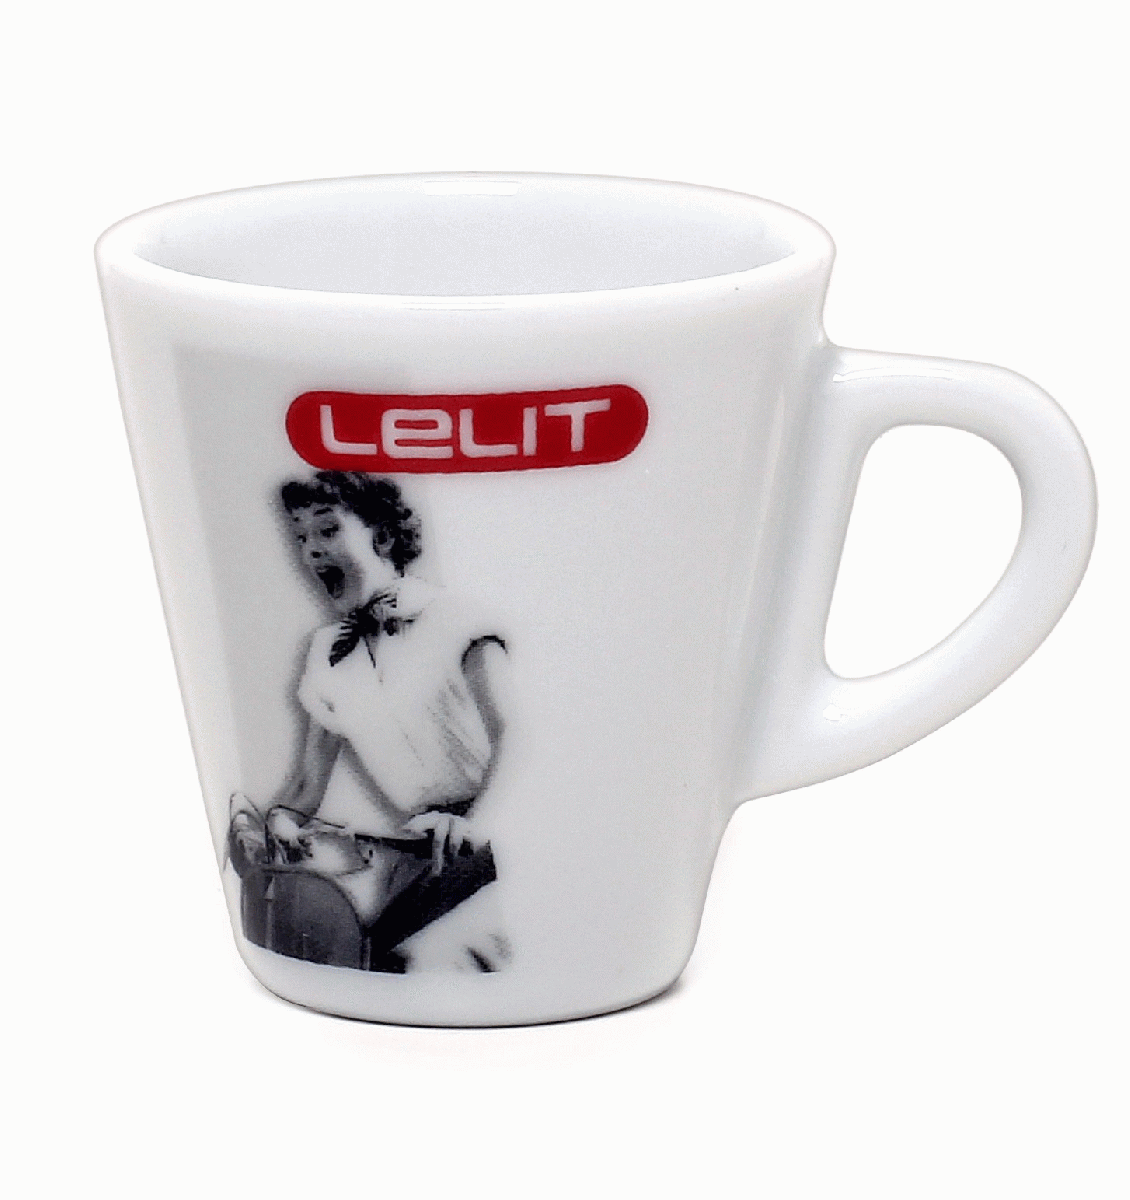 Lelit Espresso Tassen 6er Set